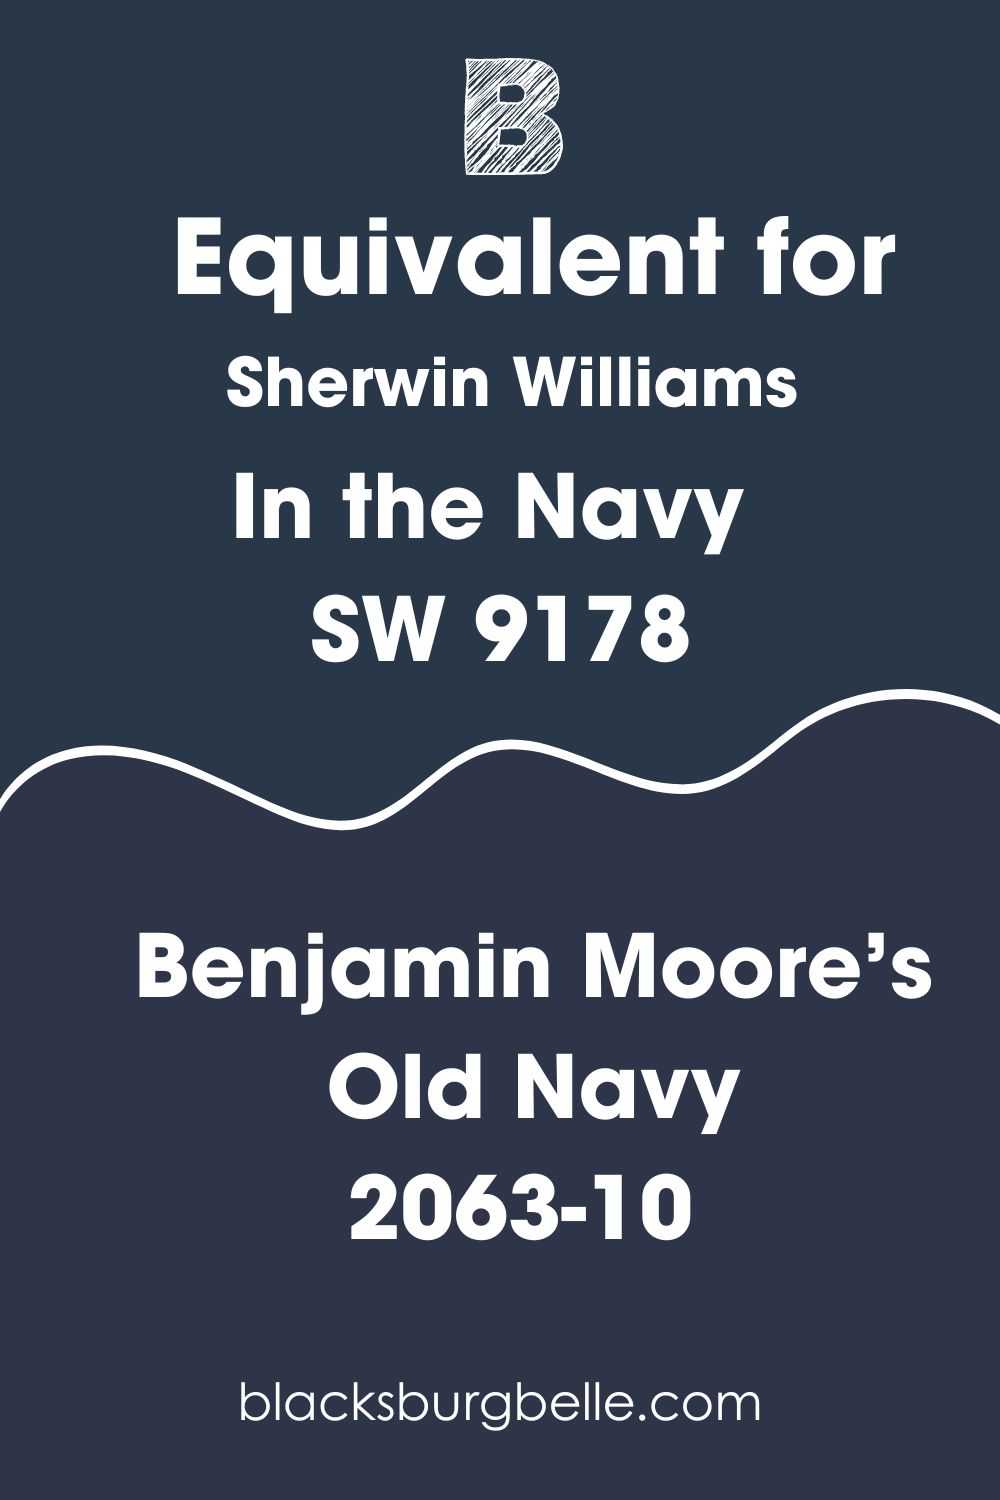 Benjamin Moore’s Old Navy 2063-10